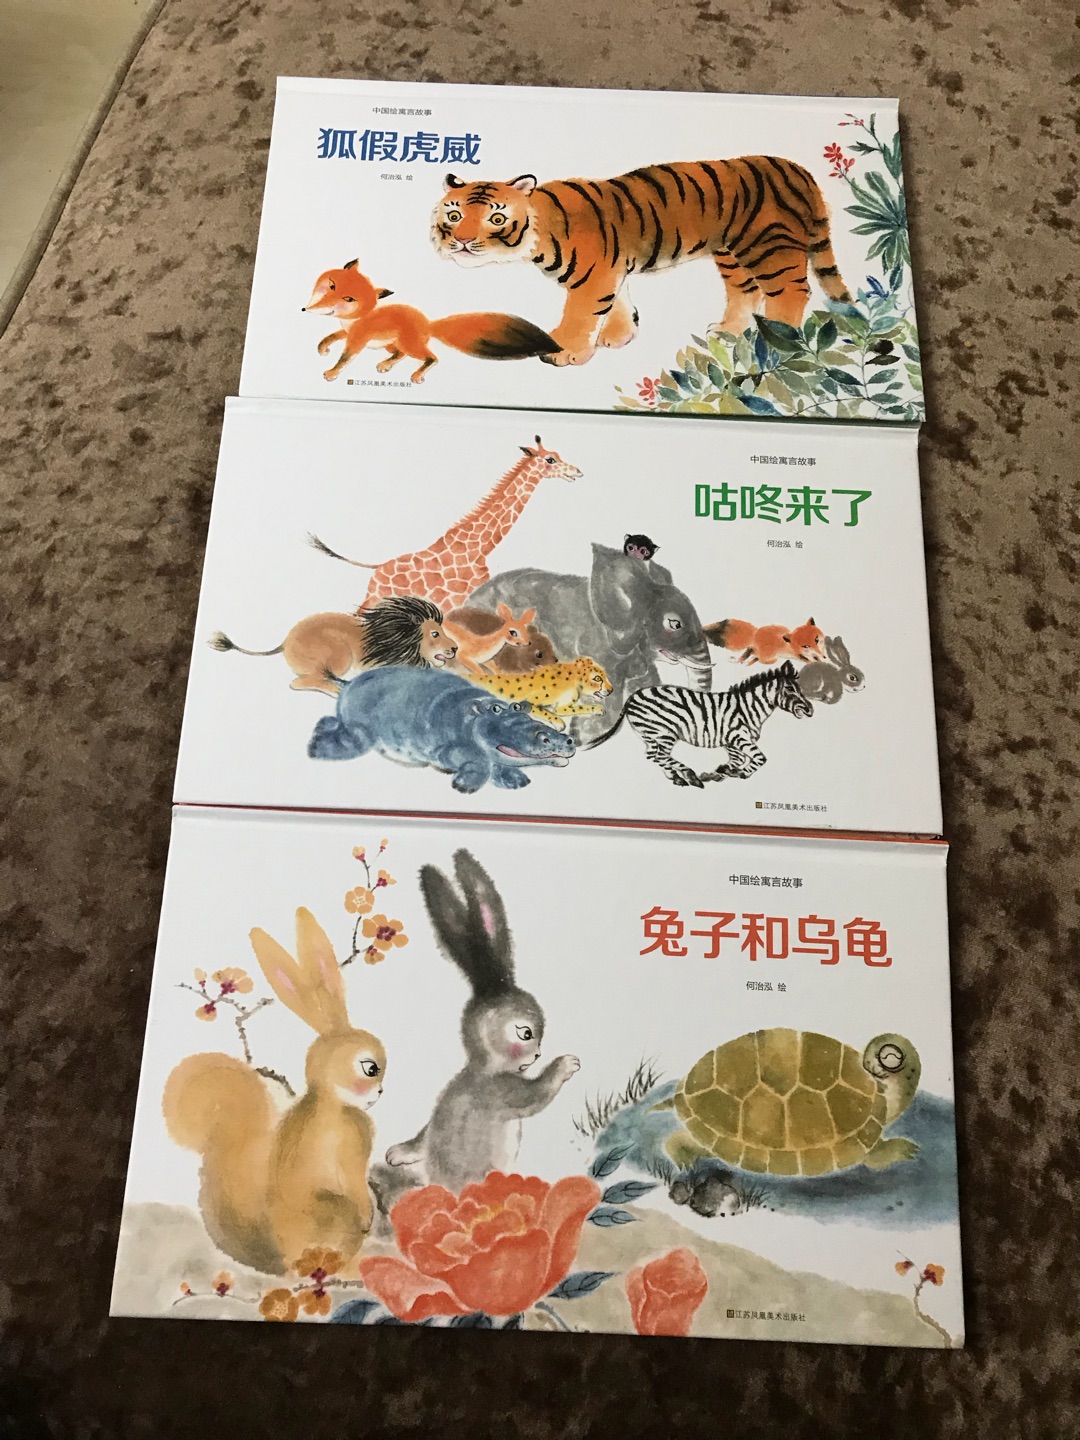 这套中国绘寓言故事很不错，很有中国风特色，故事内容读起来孩子也喜欢。喜欢在买东西，发货快品类多。。。